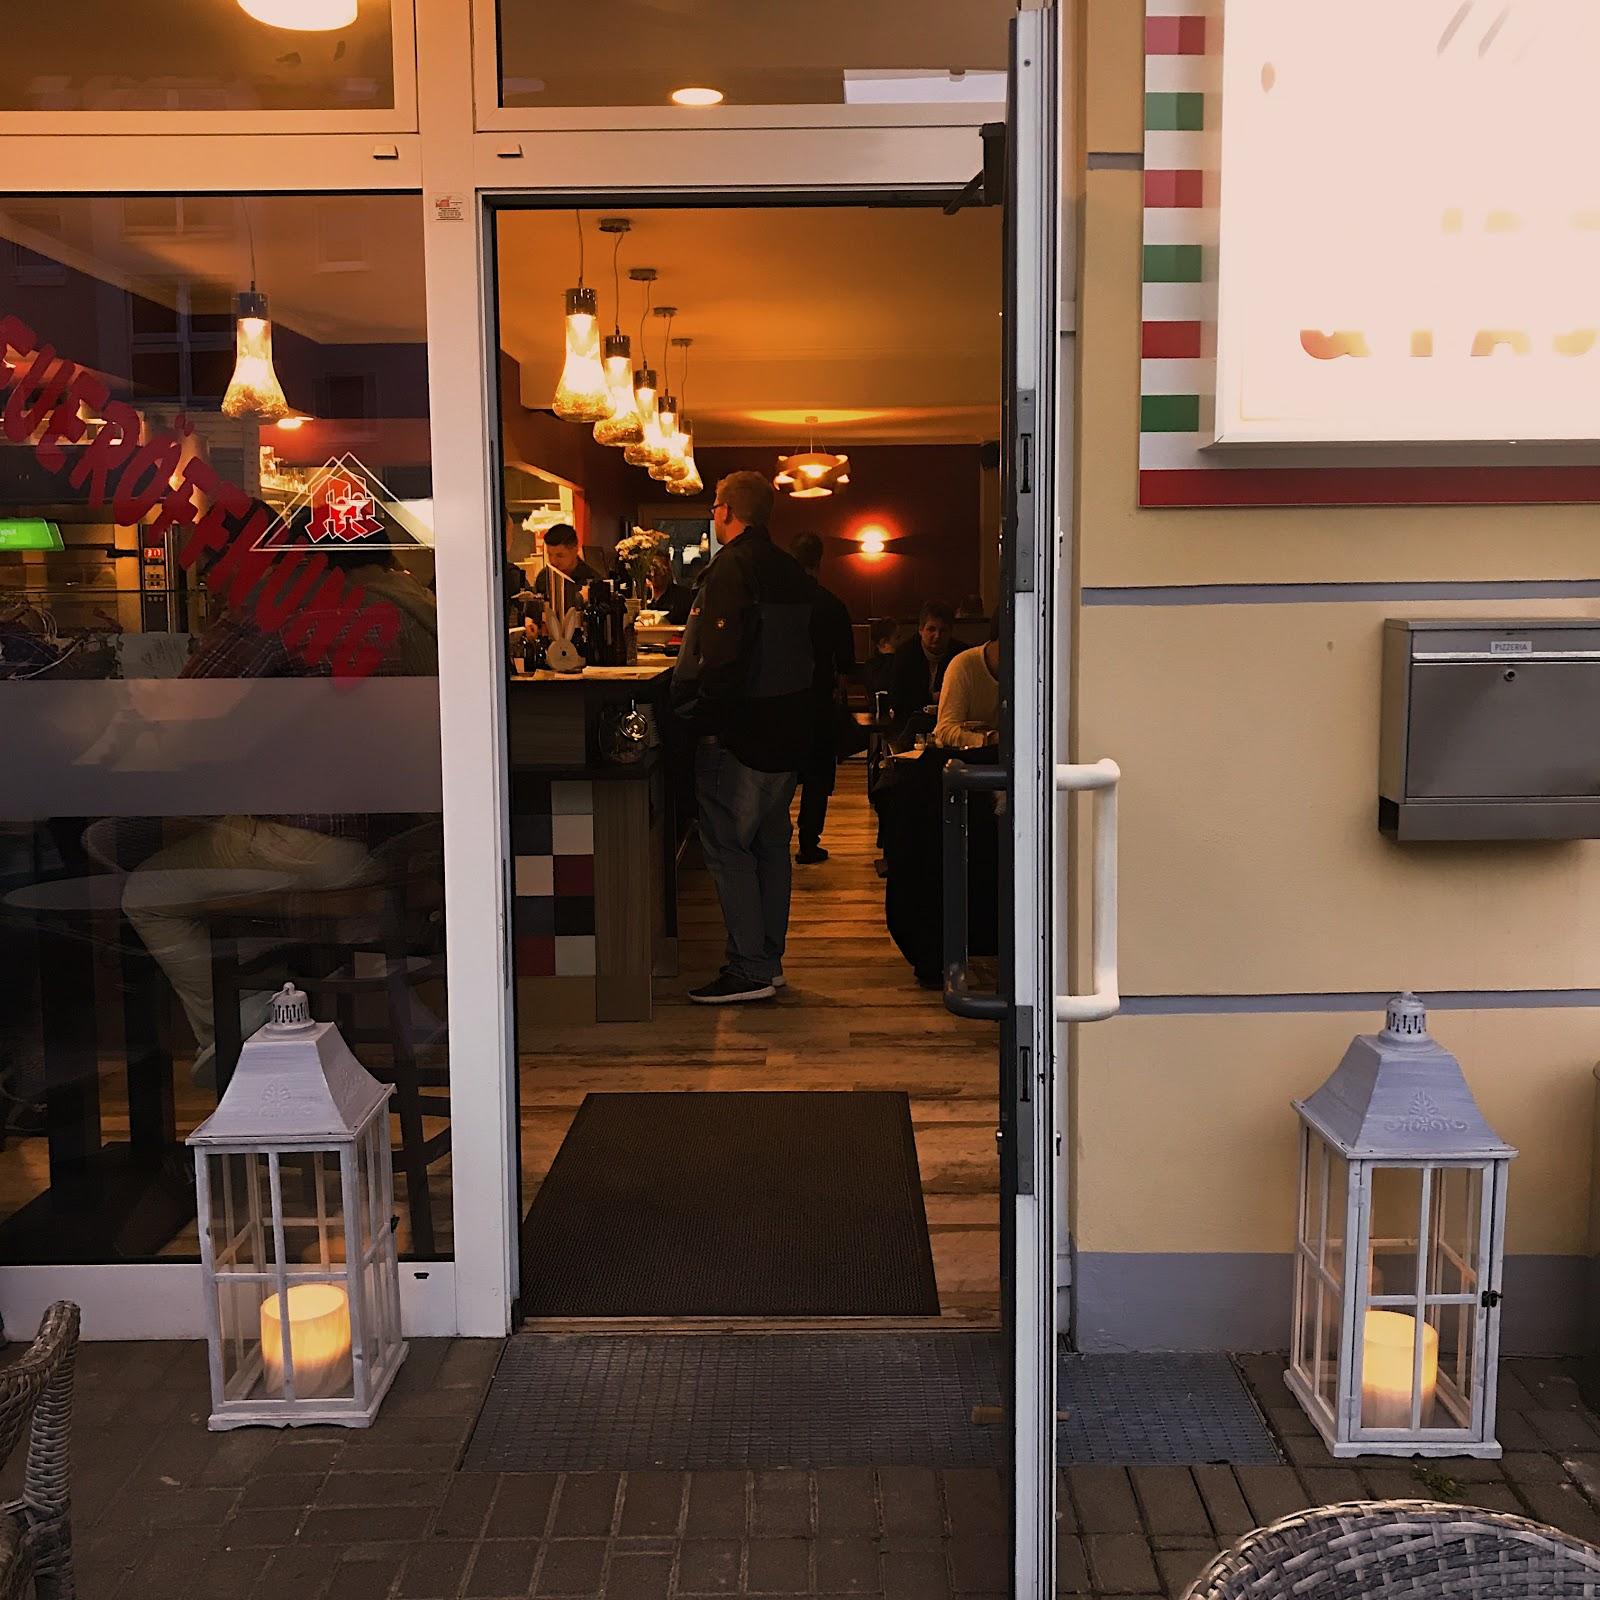 Restaurant "Nunzio Pizza Pasta" in Dortmund